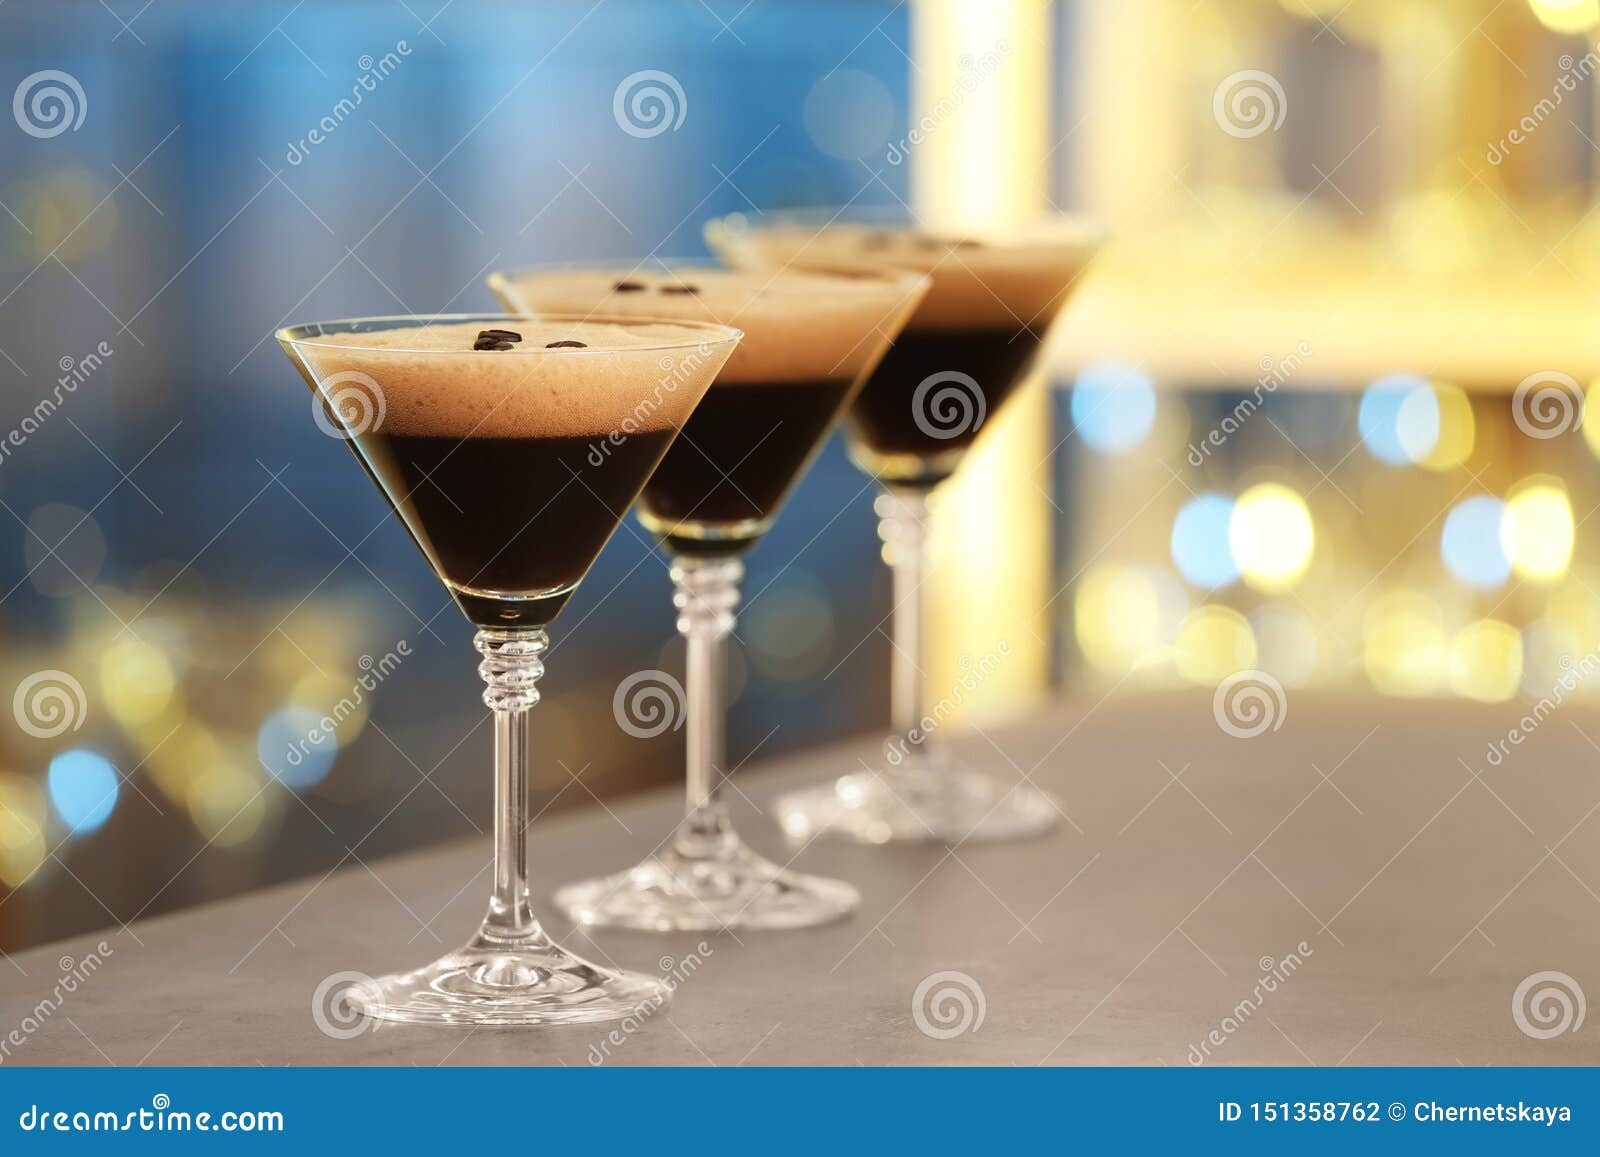 glasses of delicious espresso martini on bar counter